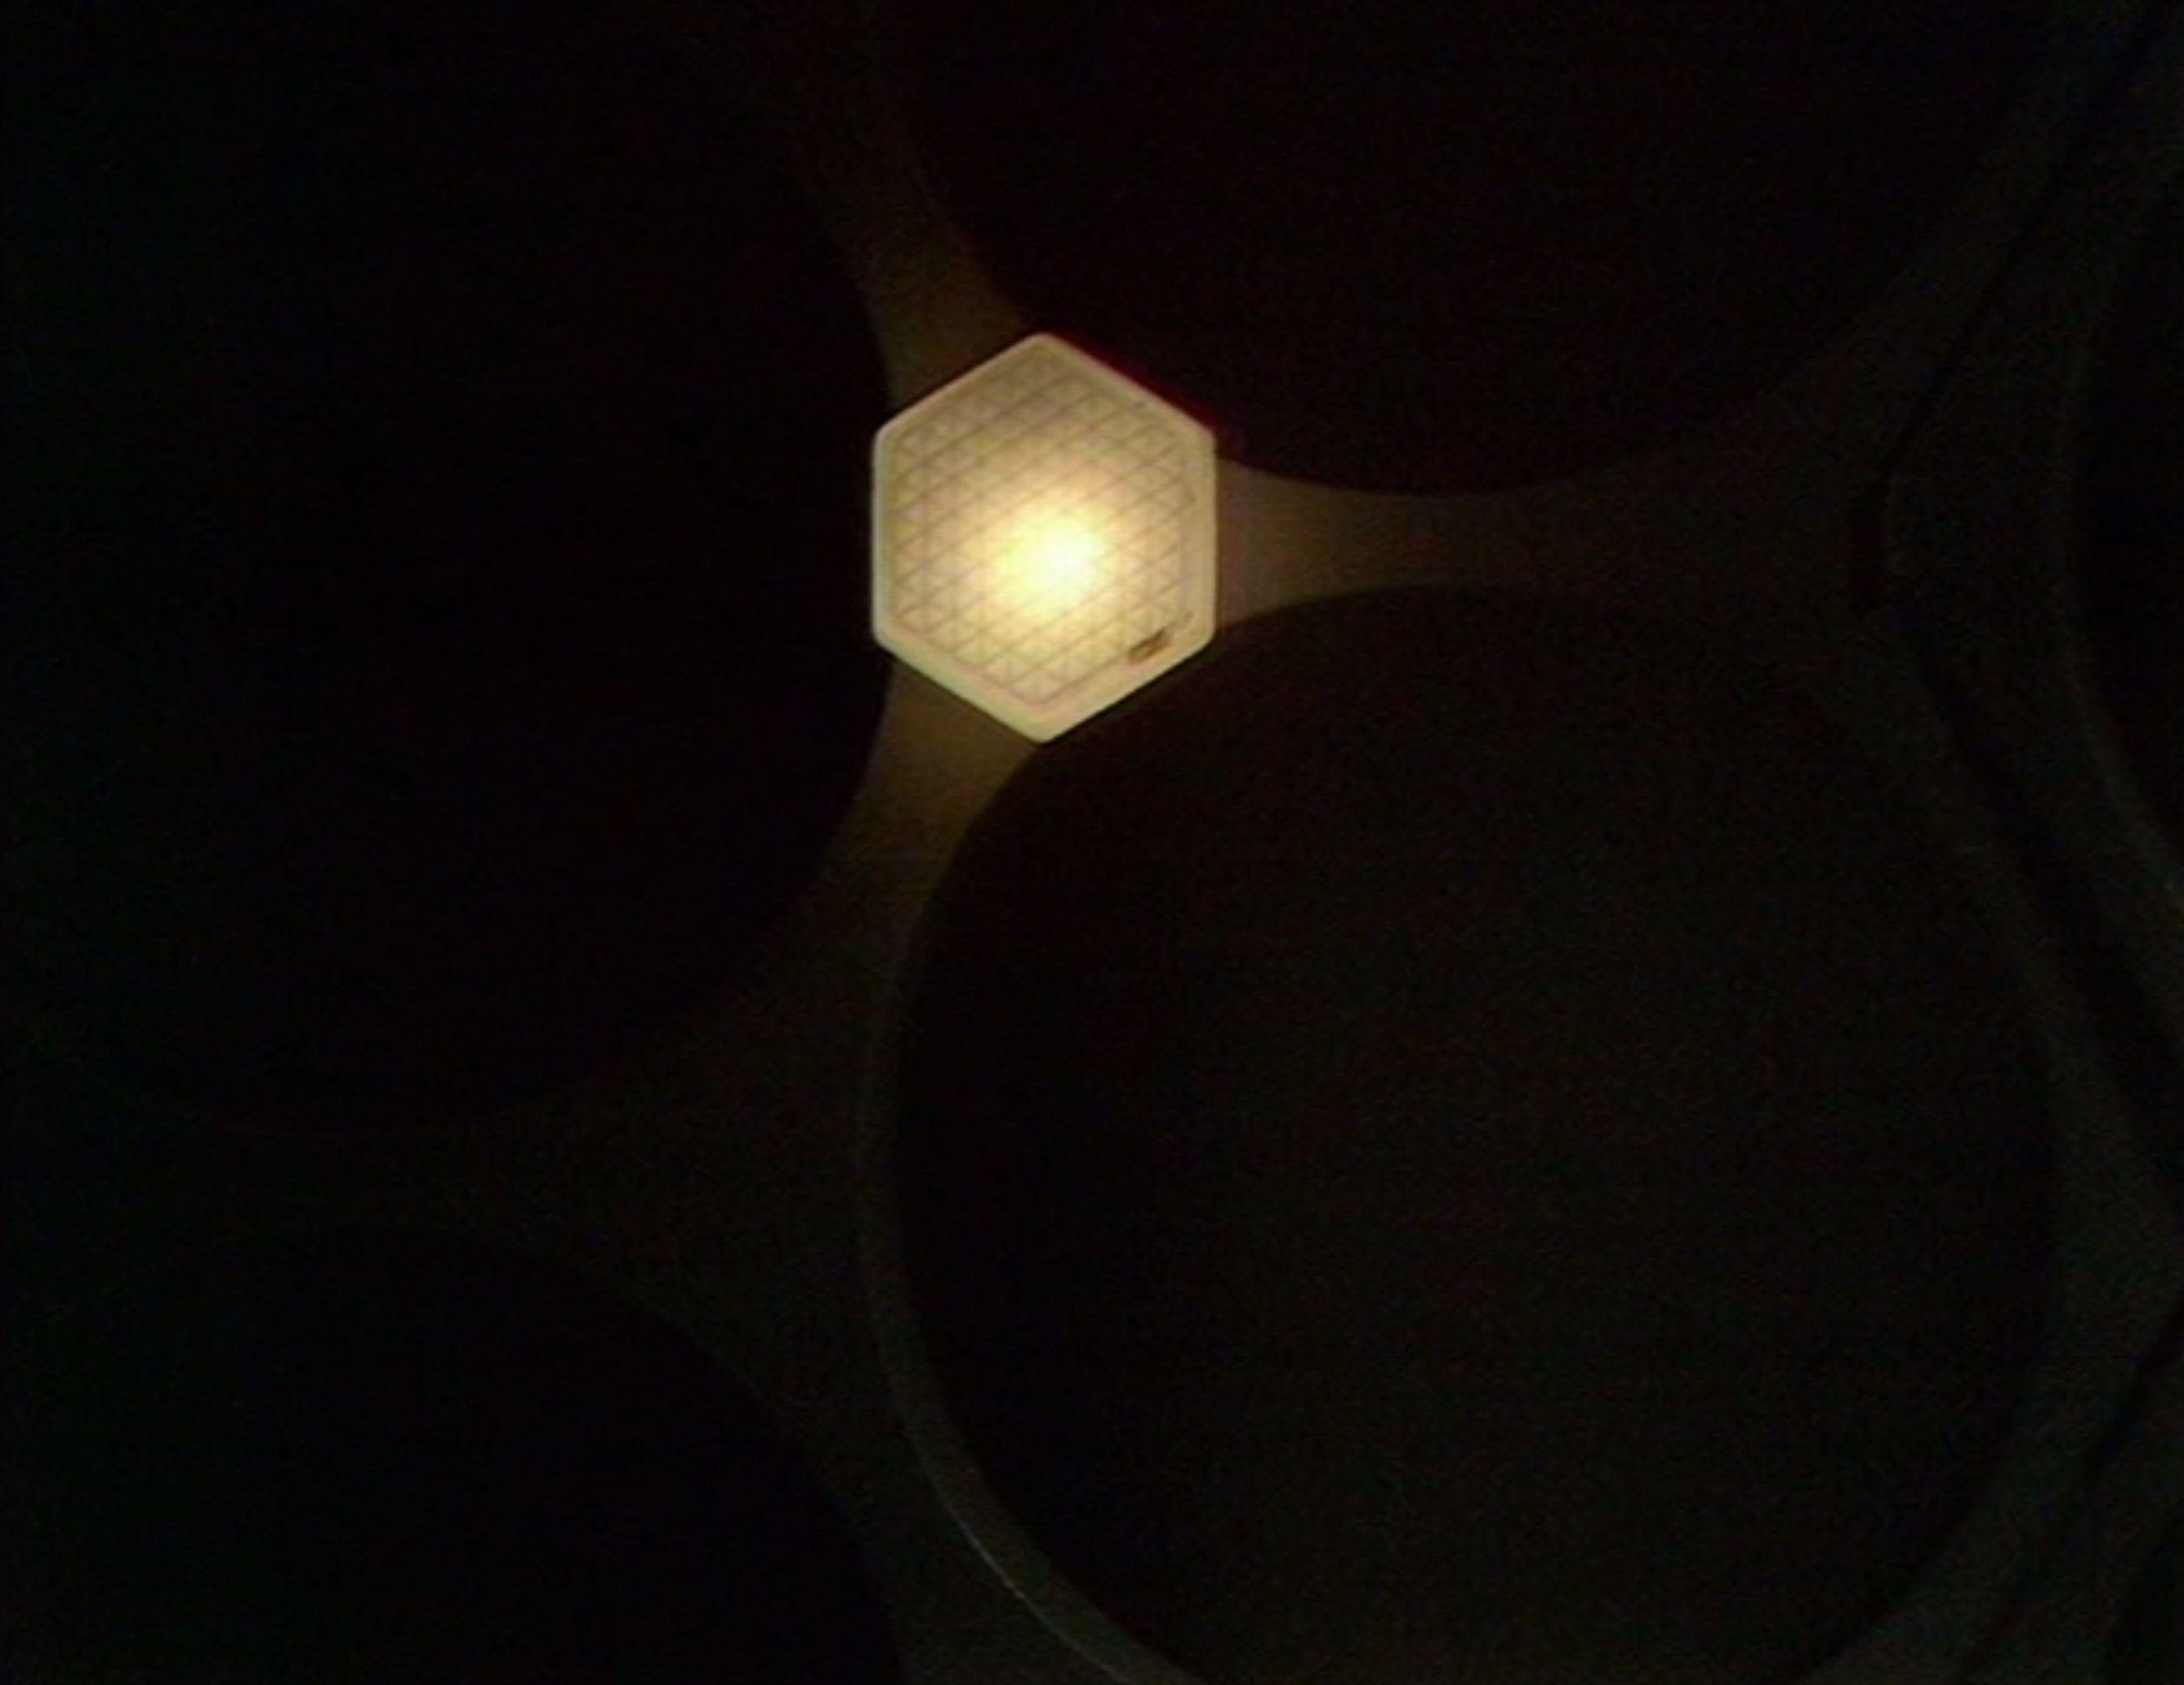 The TARDIS interior light powering down. (TV: Death to the Daleks [+]Loading...["Death to the Daleks (TV story)"])